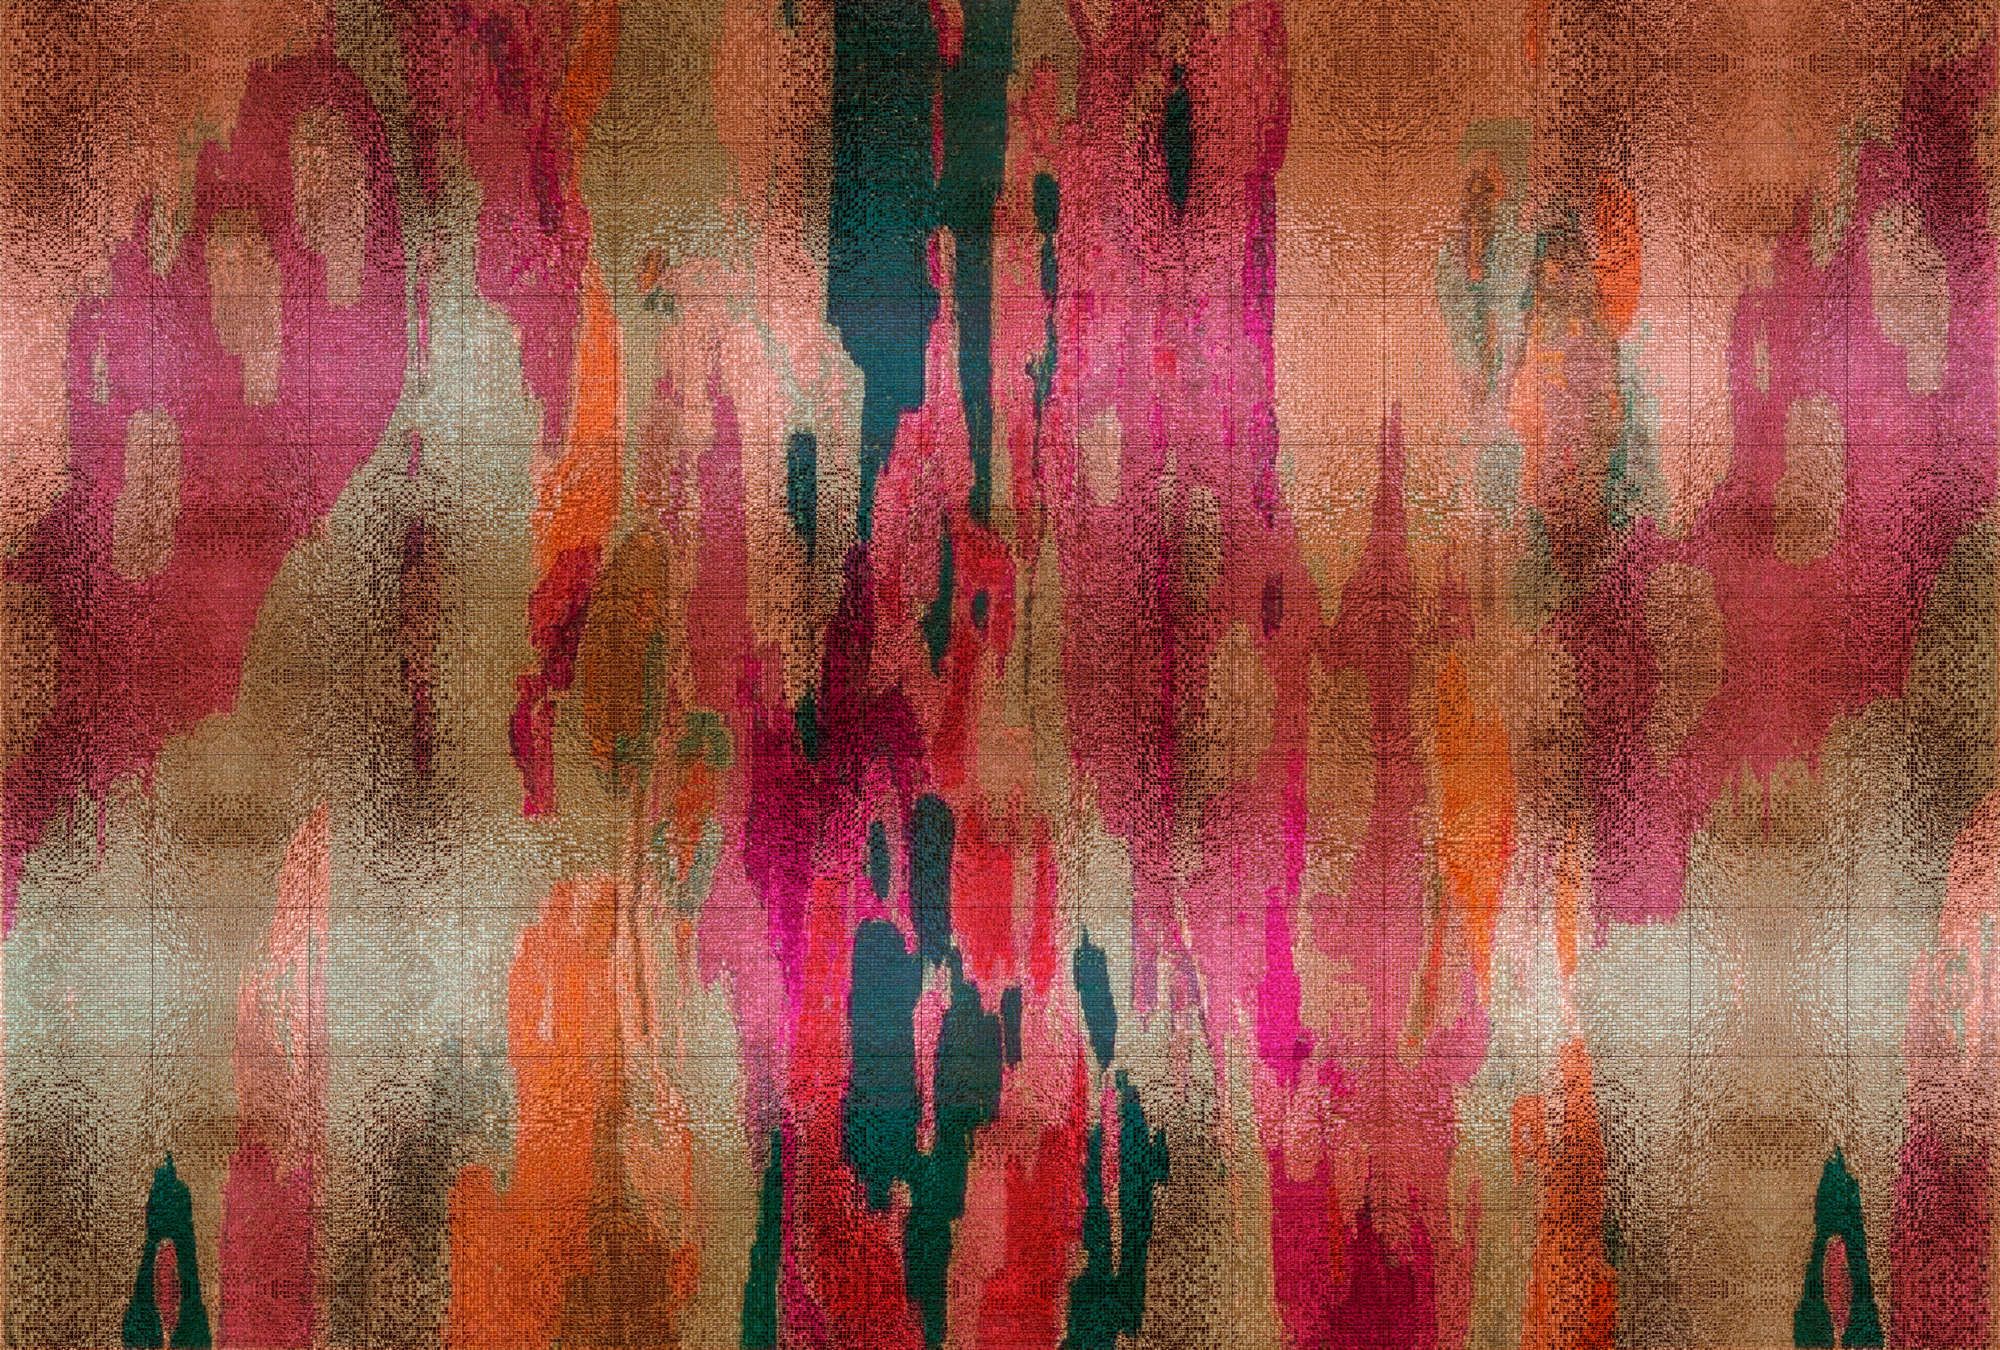             Fotomural »marielle 2« - Degradados de color violeta, naranja, petróleo con estructura de mosaico - Tela no tejida de alta calidad, lisa y ligeramente brillante
        